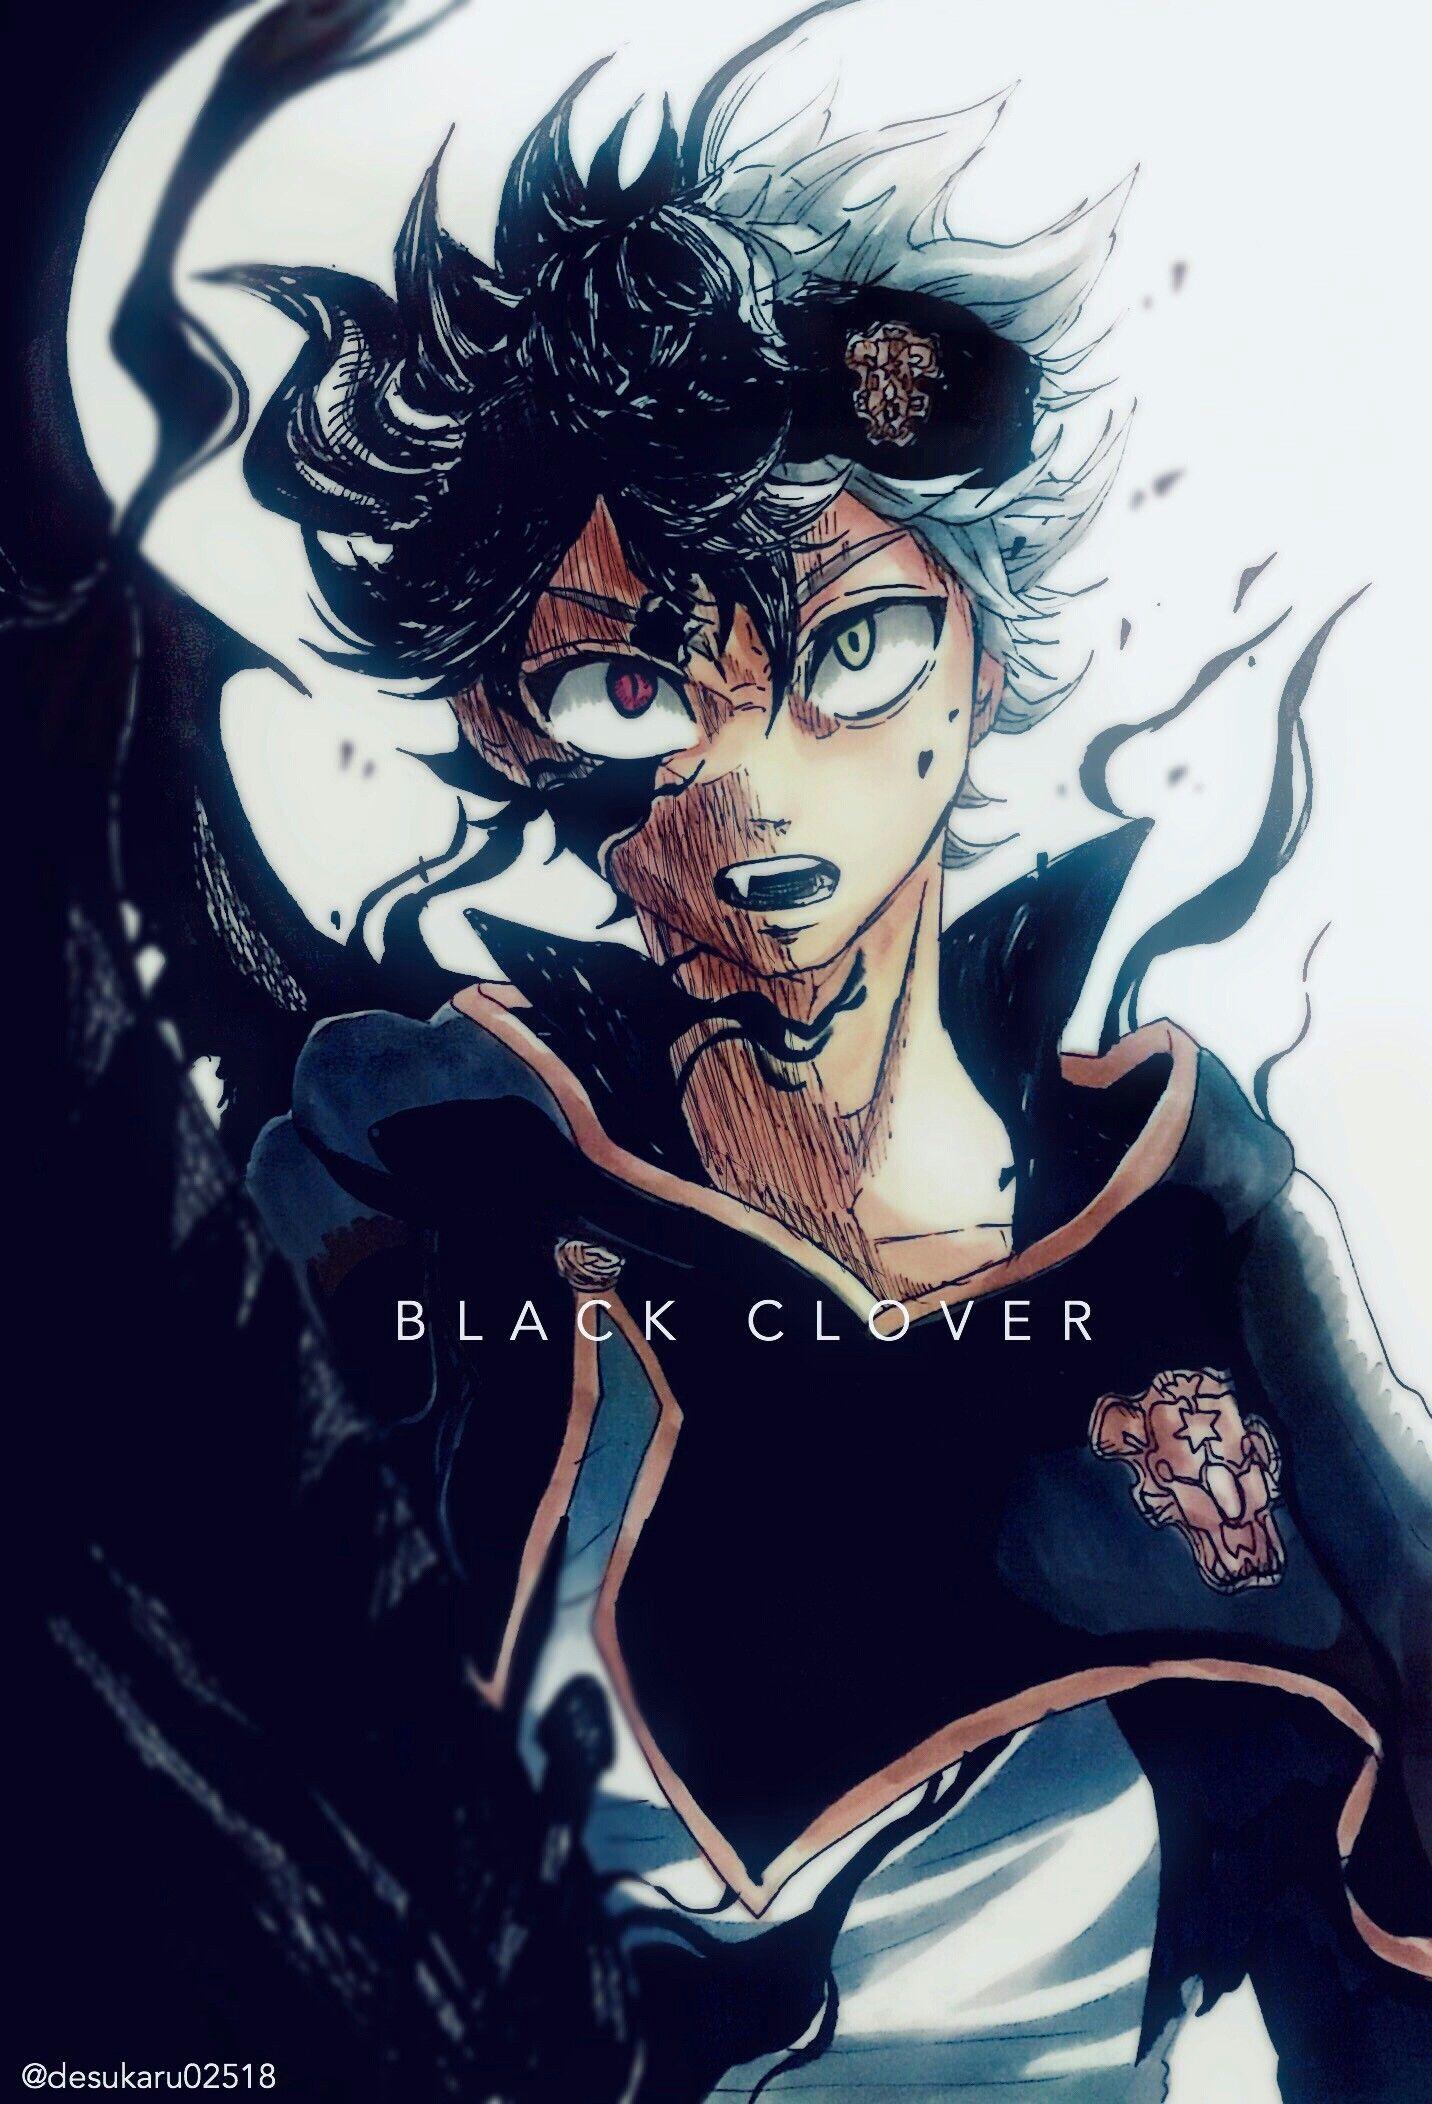 HD wallpaper: Anime, Black Clover, Asta (Black Clover)  Imagenes de anime  hd, Chicas anime, Personajes de anime